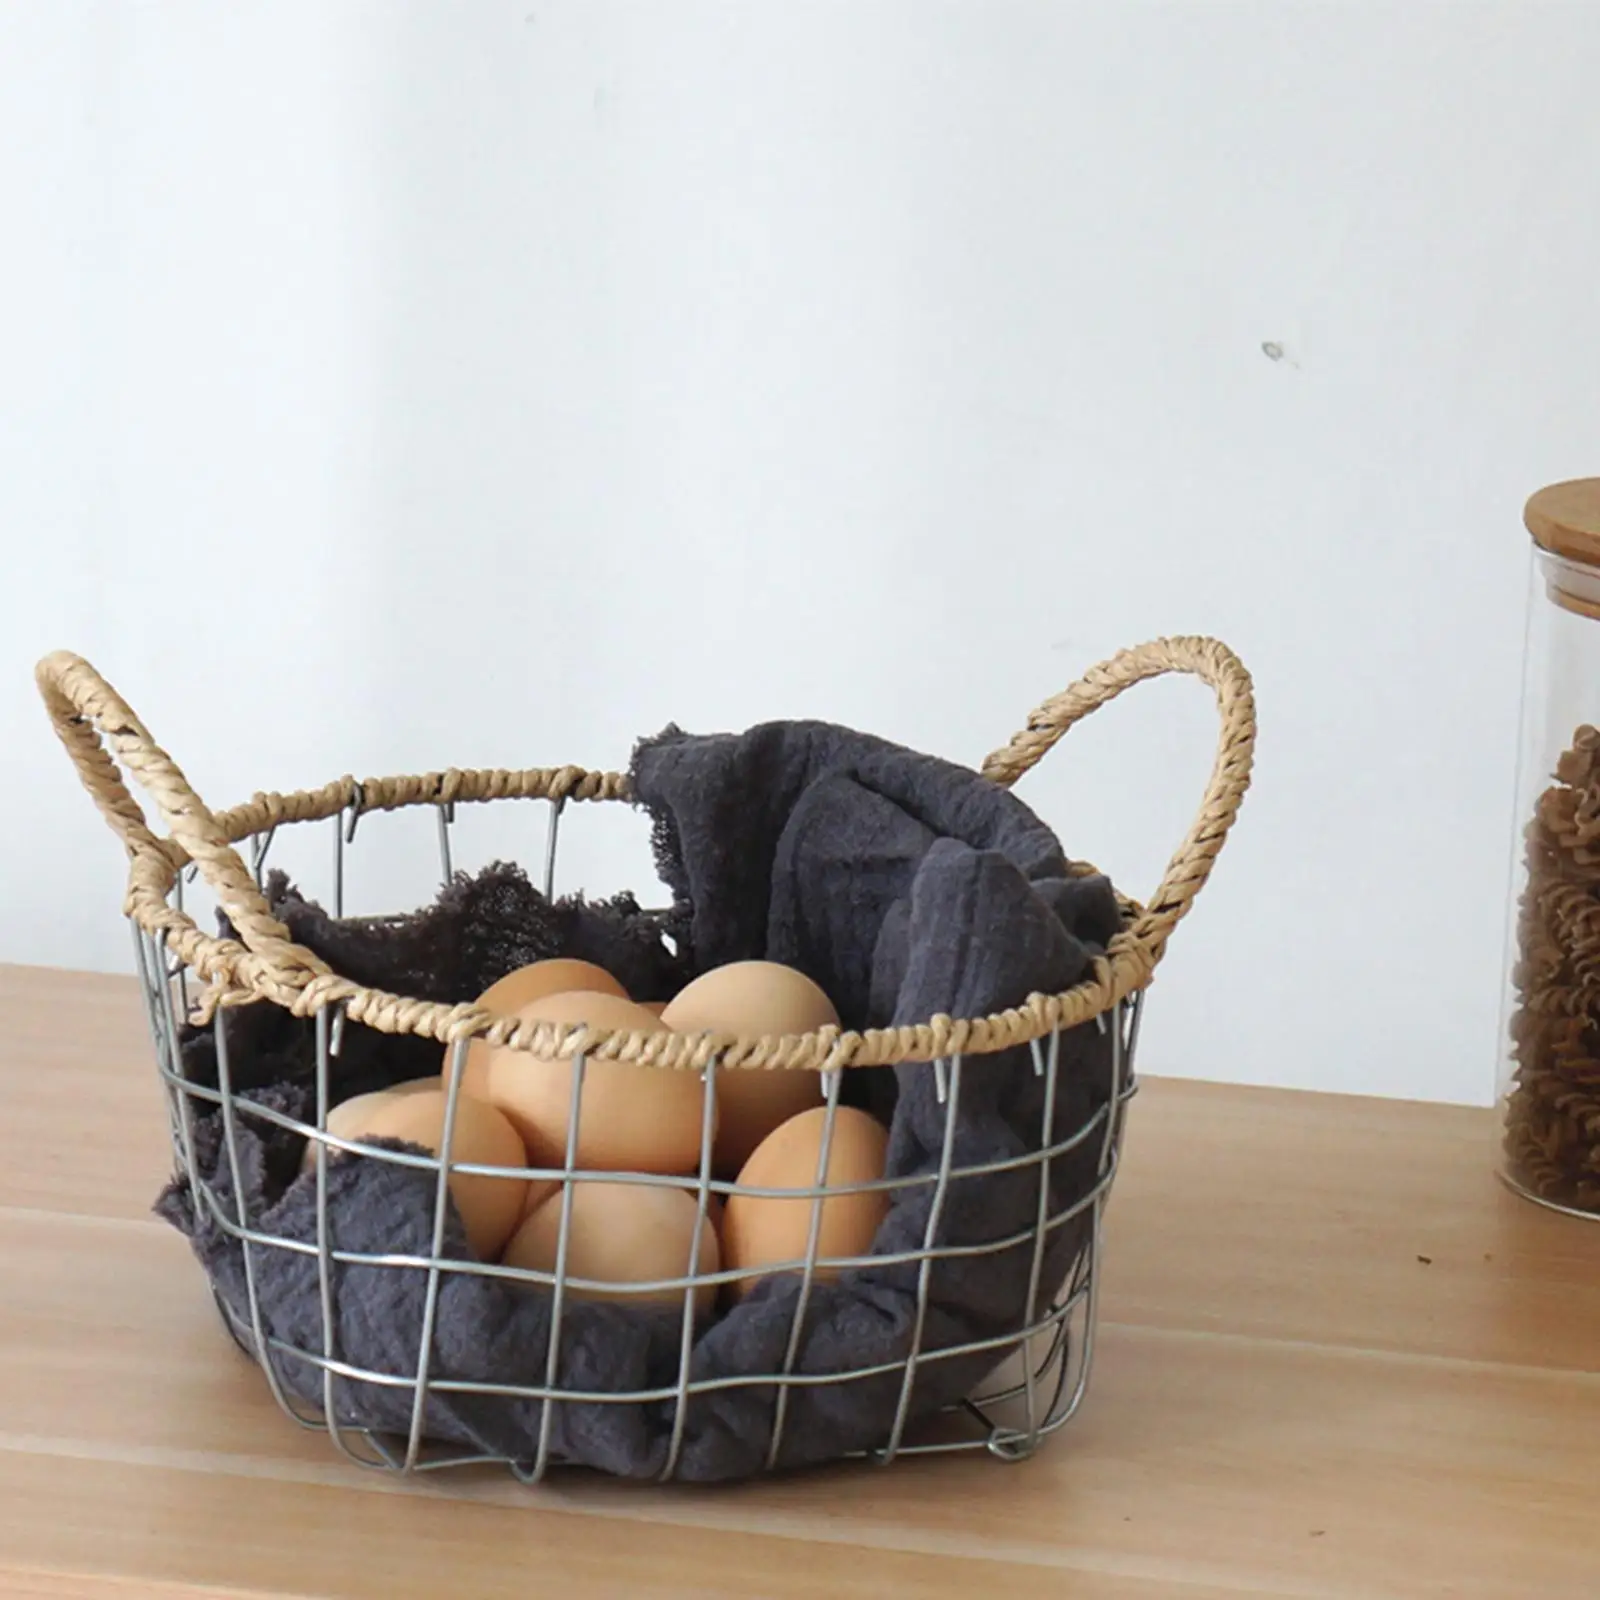 Egg Basket Portable Container Fruit Stand Holder Organizer Gathering Basket for Kitchen Dining Table Cabinet Bathroom Vegetables